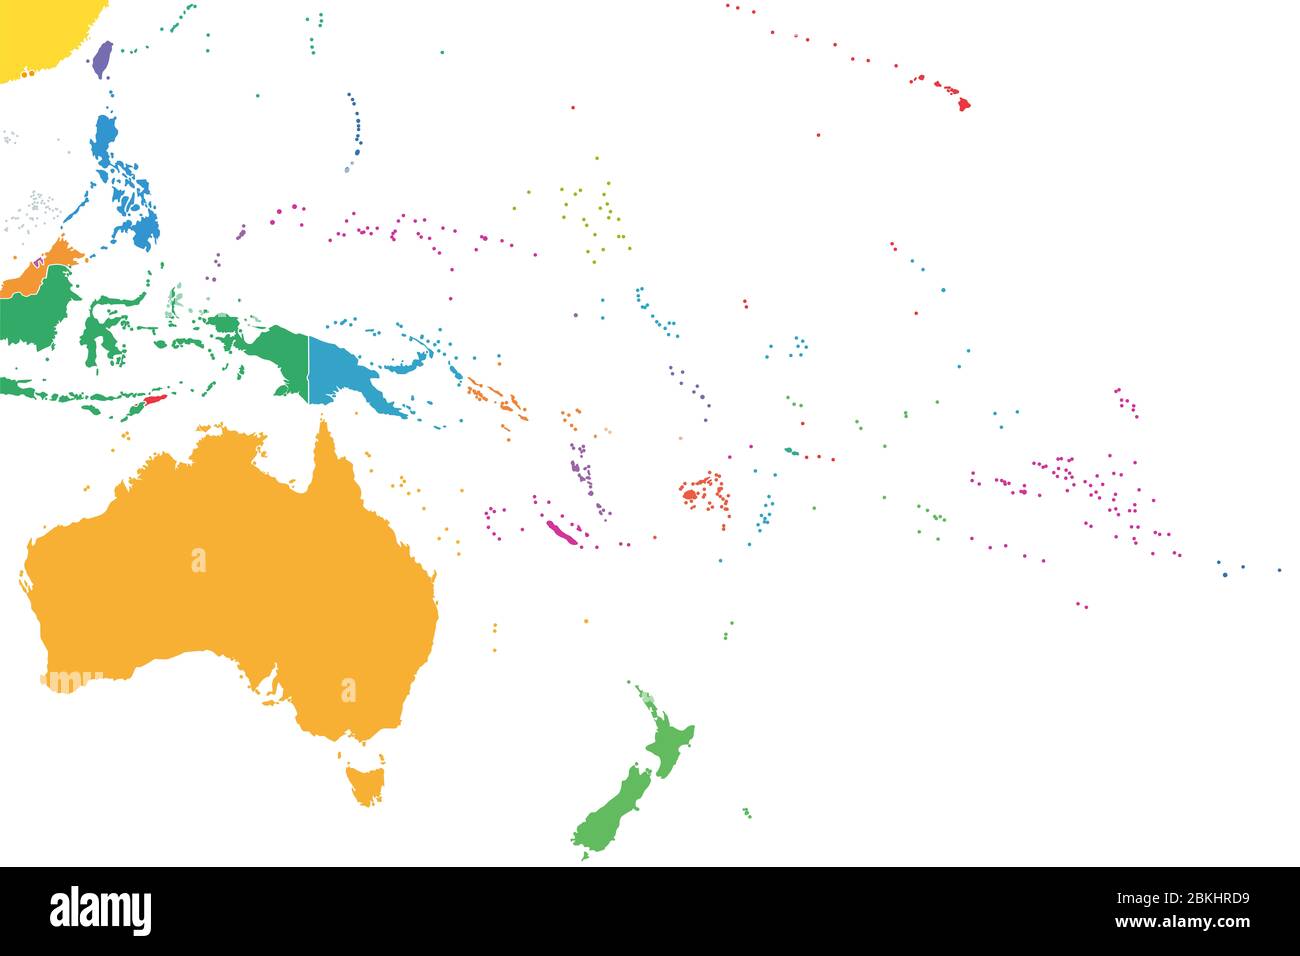 Océanie, Etats simples de couleur, carte politique. Région géographique, au sud-est de la région Asie-Pacifique. Australasie, Mélanésie, Micronésie, Polynésie. Banque D'Images